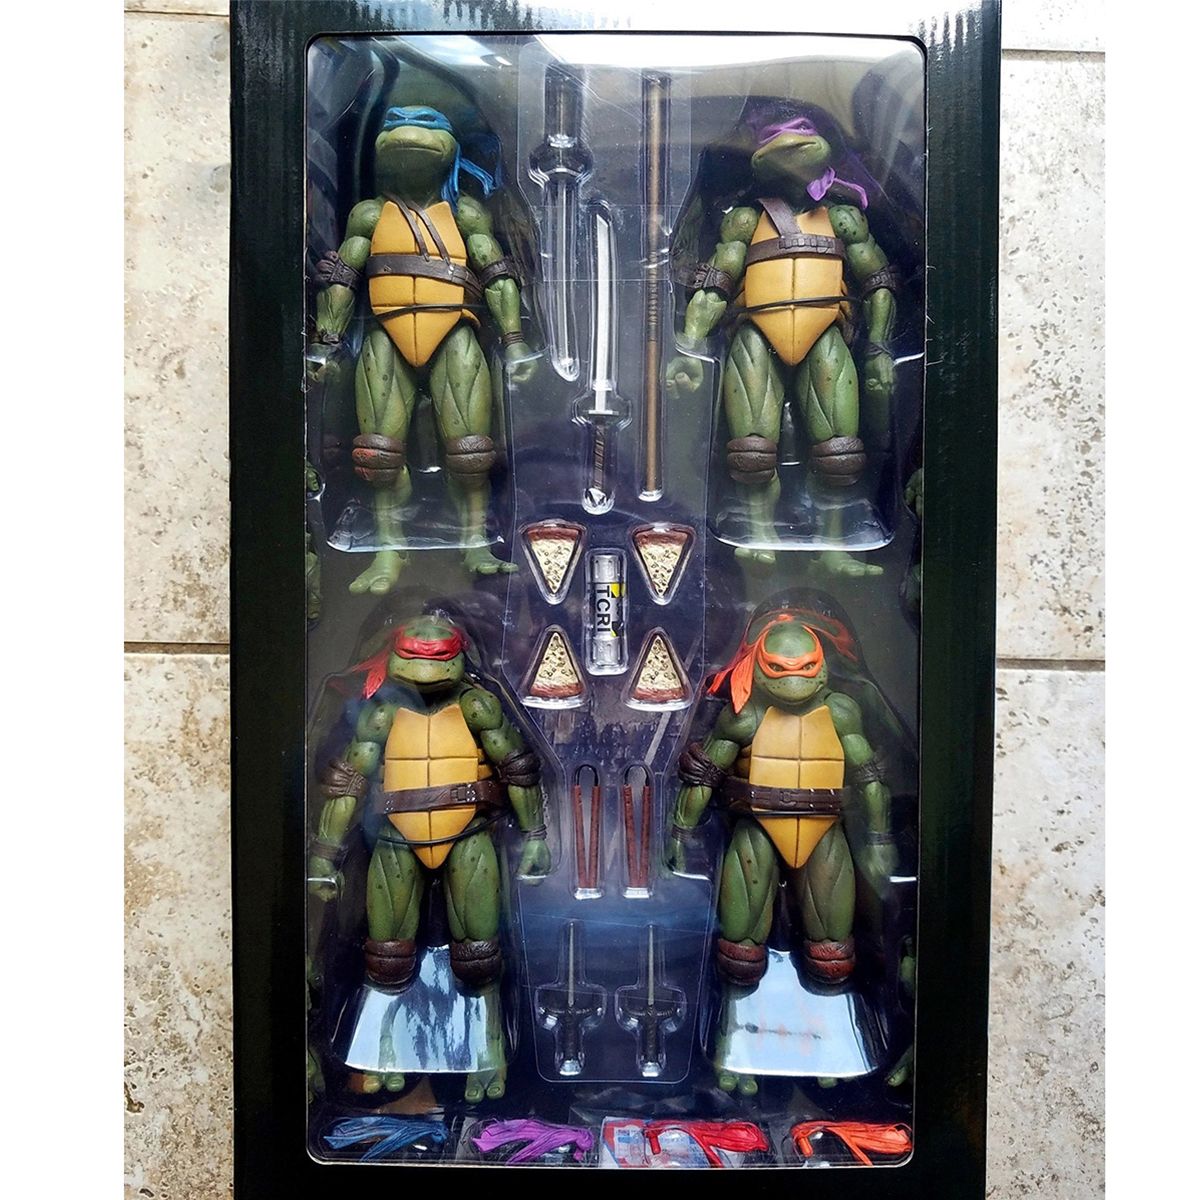 اکشن فیگور نکا مدل لاکپشت های نینجا طرح Turtle Ninja مجموعه 4 عددی -  - 19